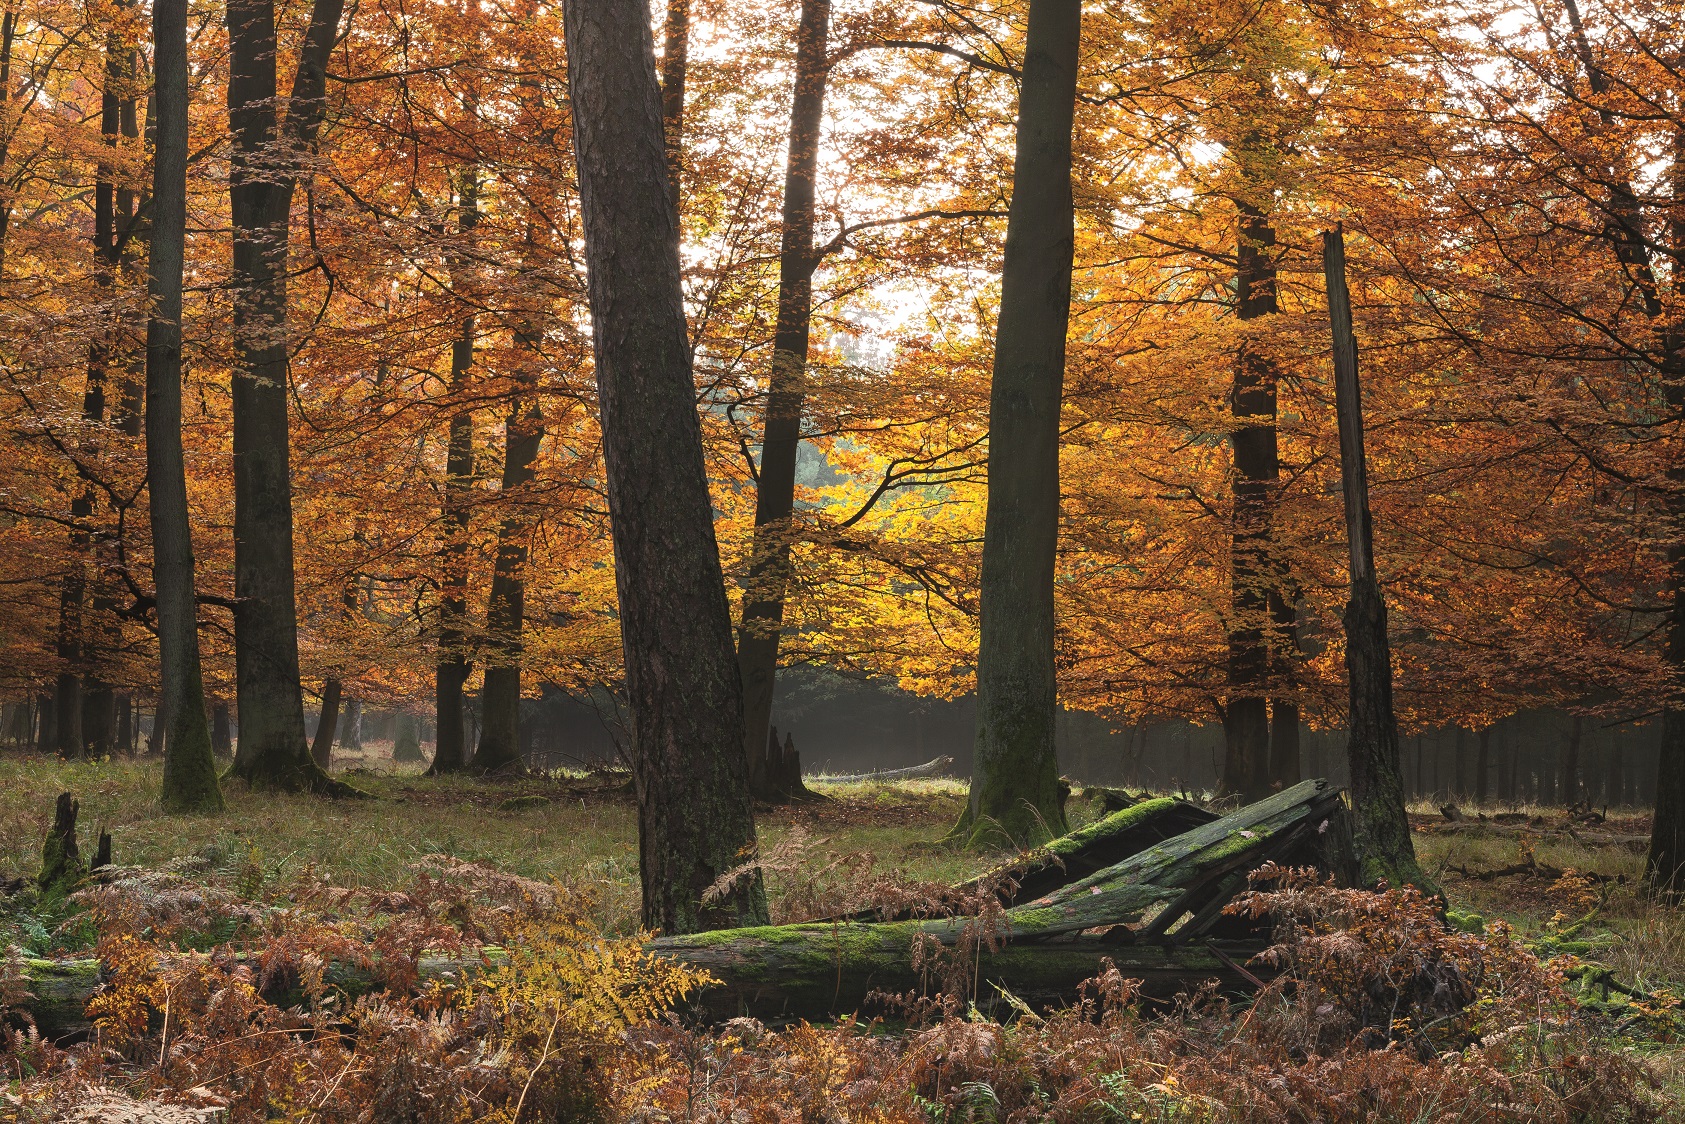 Zdjęcie przedstawia drzewostany z udziałem buka w Parku Krajobrazowym Puszcza Zielonka. Fot. Krzysztof Moroz